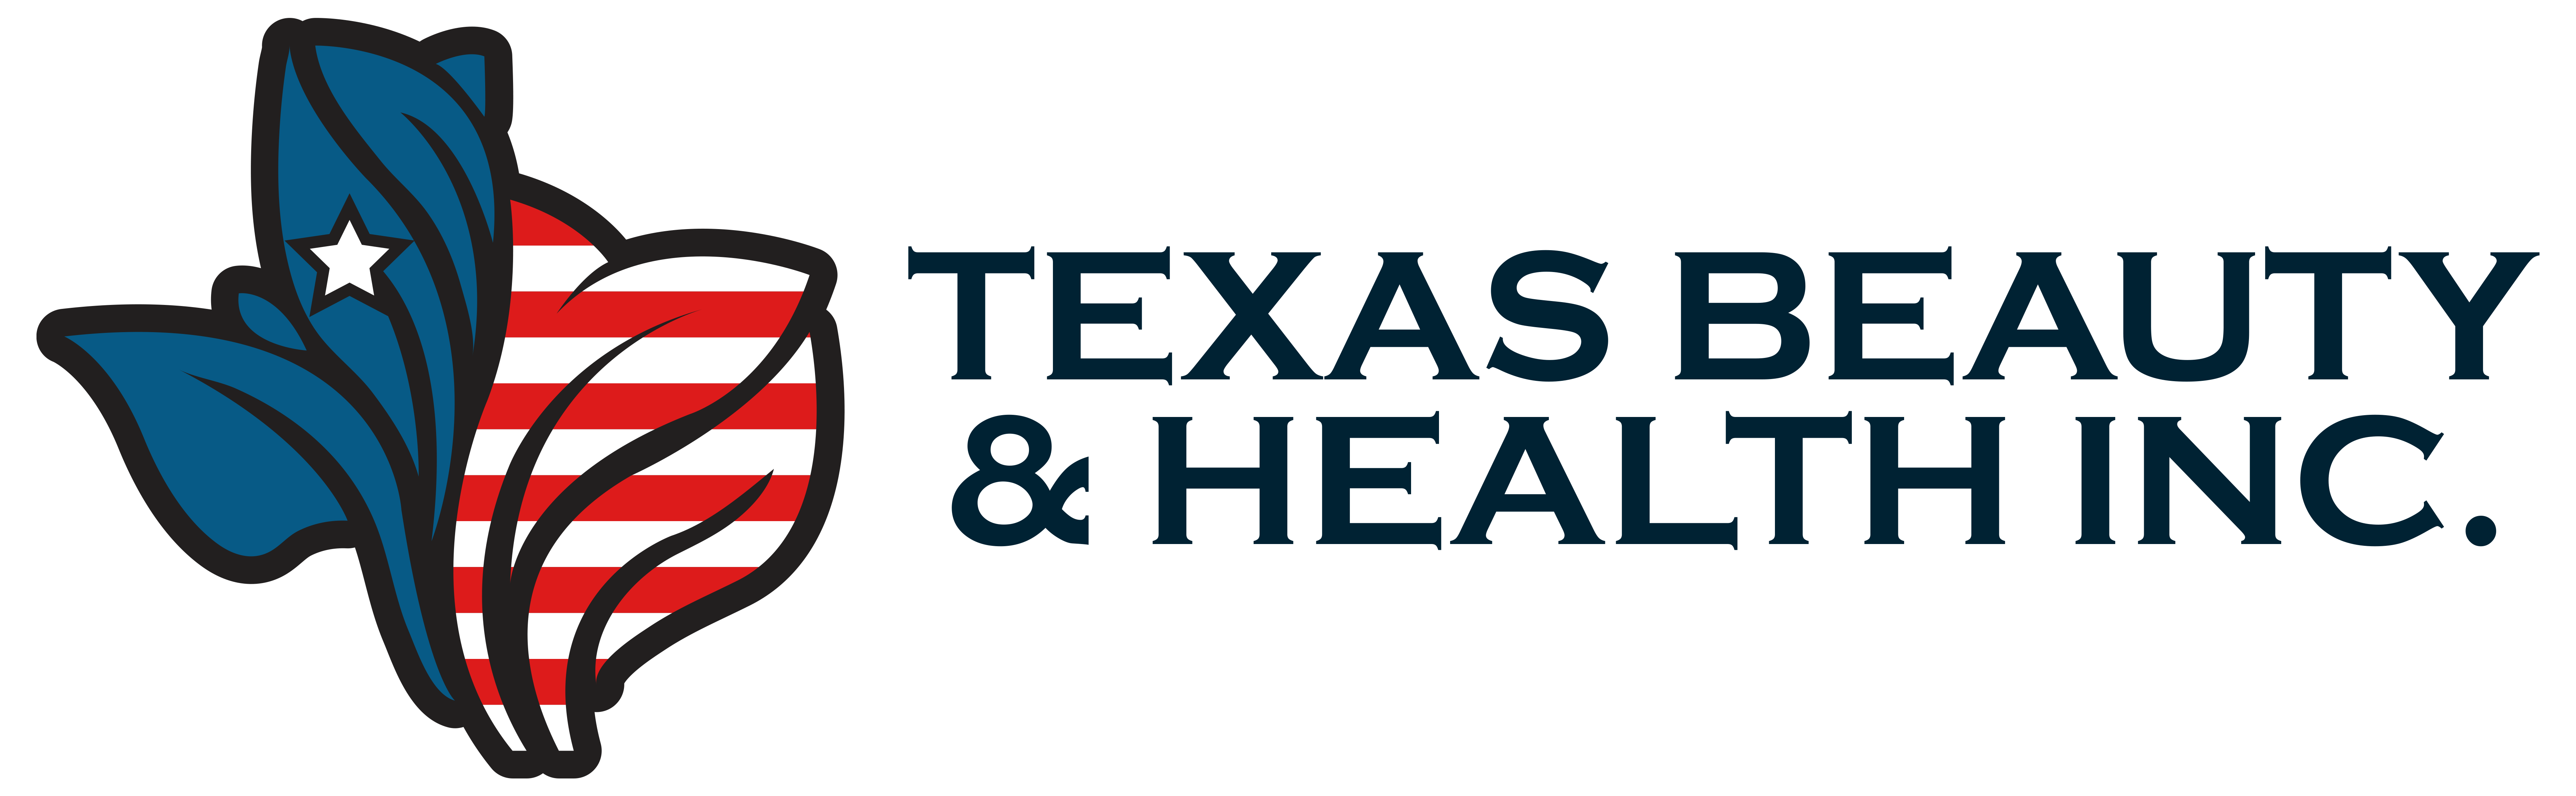 Texas Beauty & Health Inc